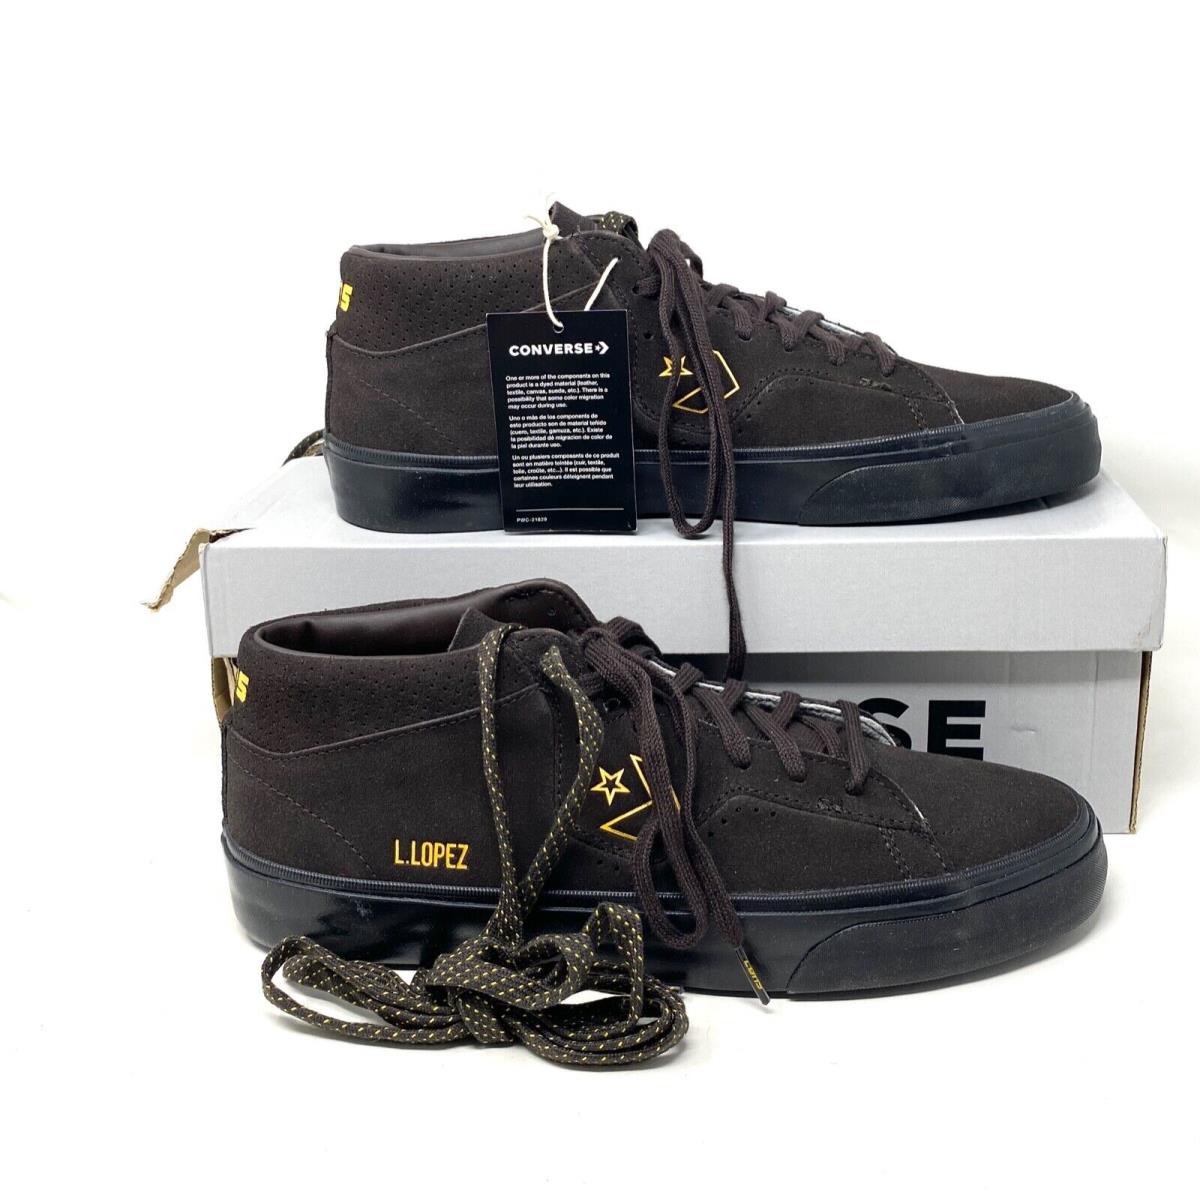 Converse shoes Louie Lopez Pro - Brown 1